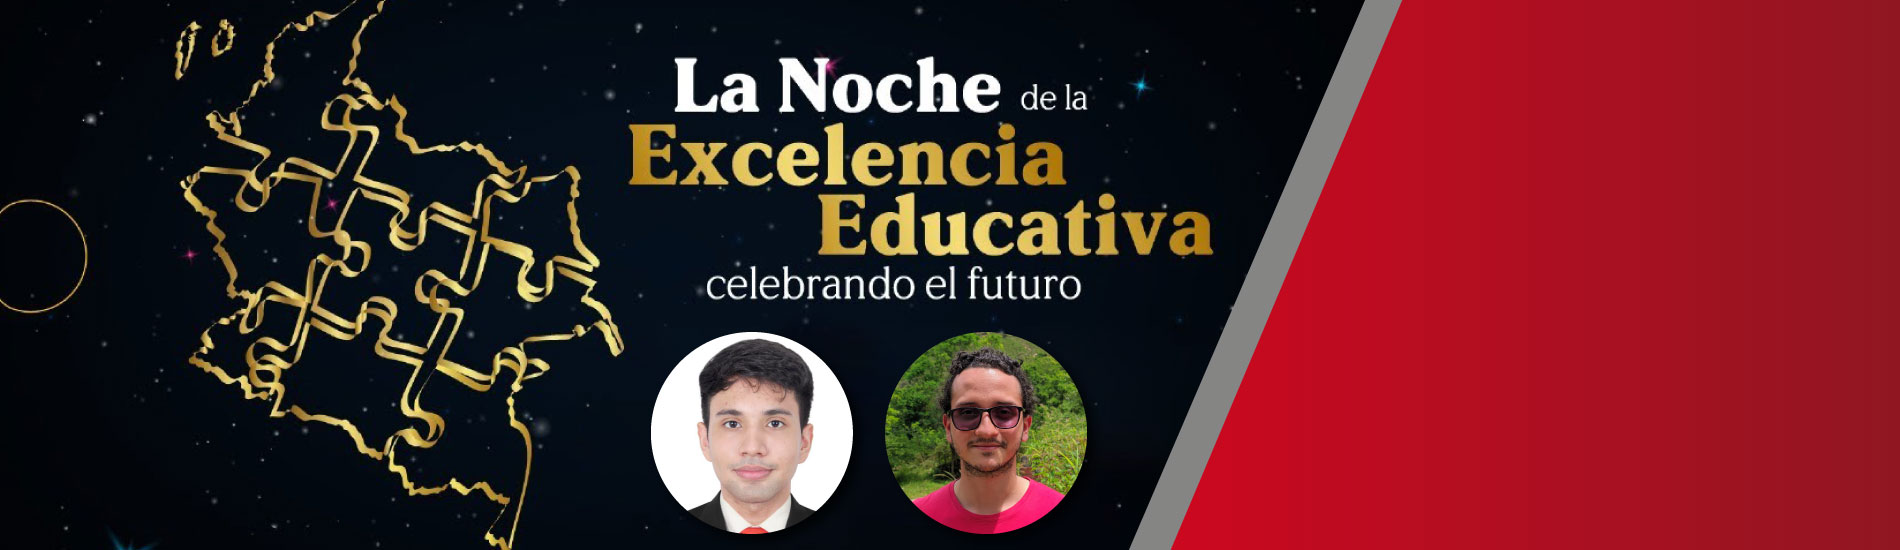 Graduados UFPS Cúcuta recibieron reconocimiento en la noche de la excelencia educativa